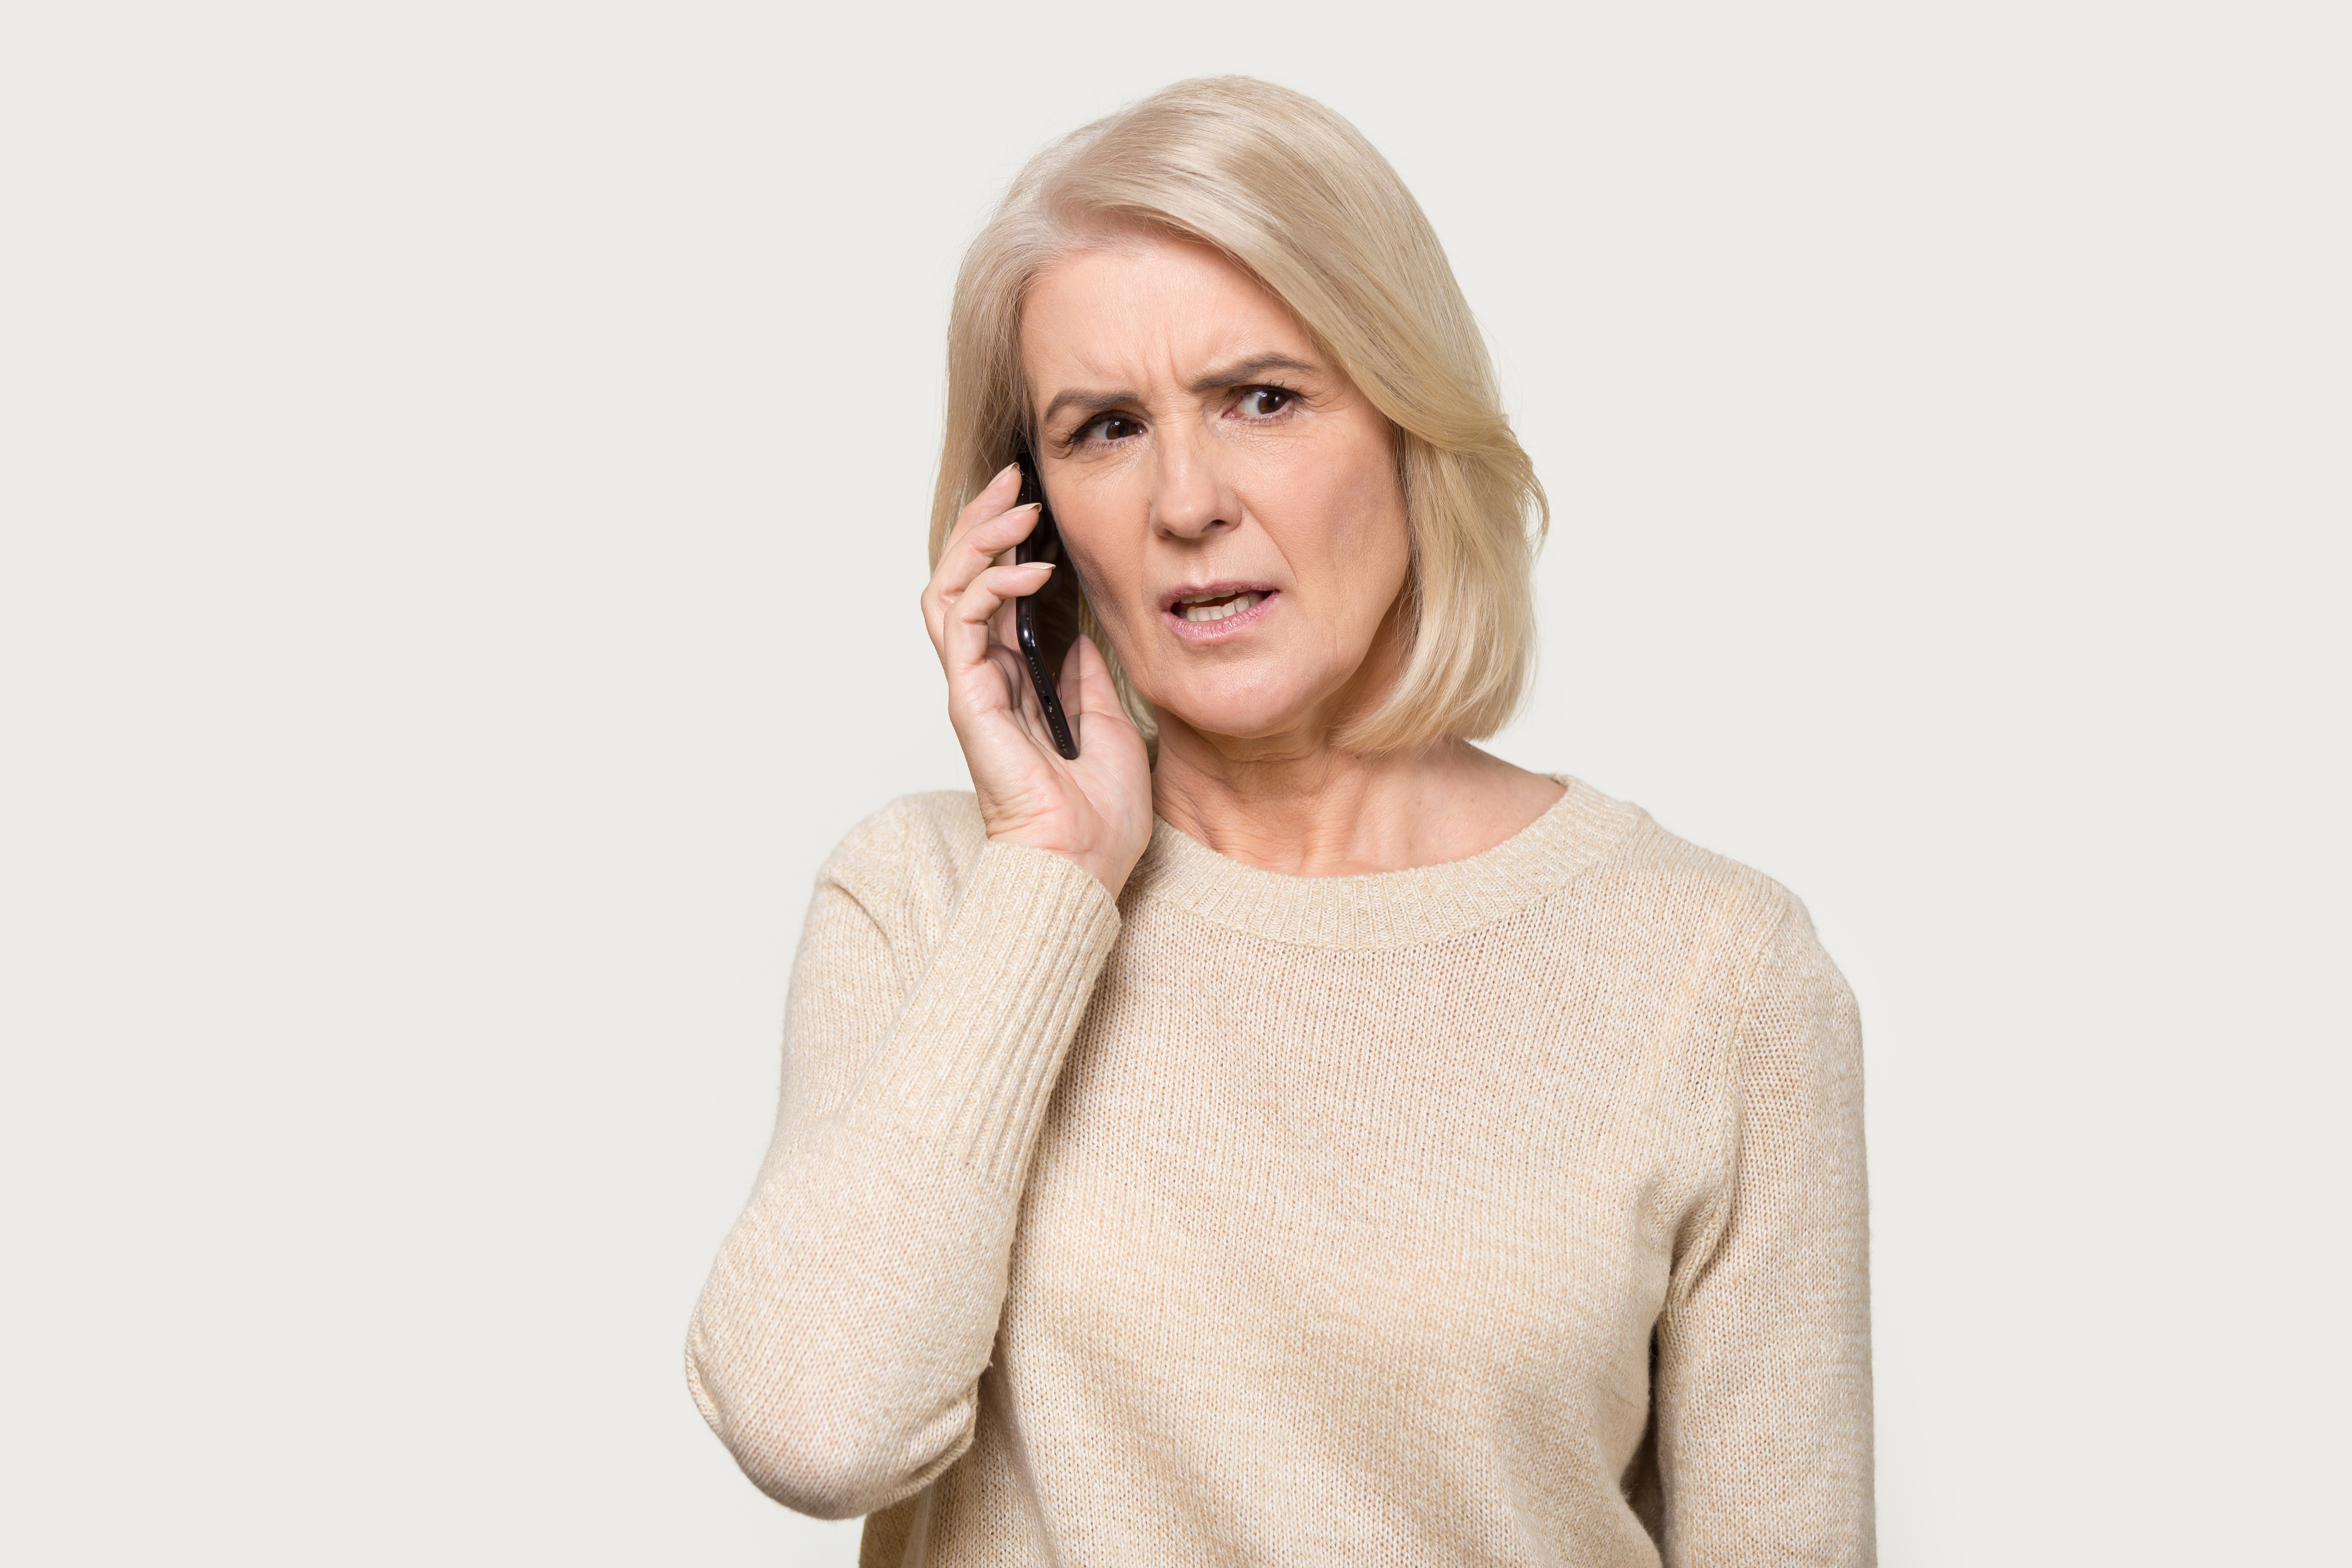 Une femme à l'air inquiète alors qu'elle est au téléphone | Source : Shutterstock